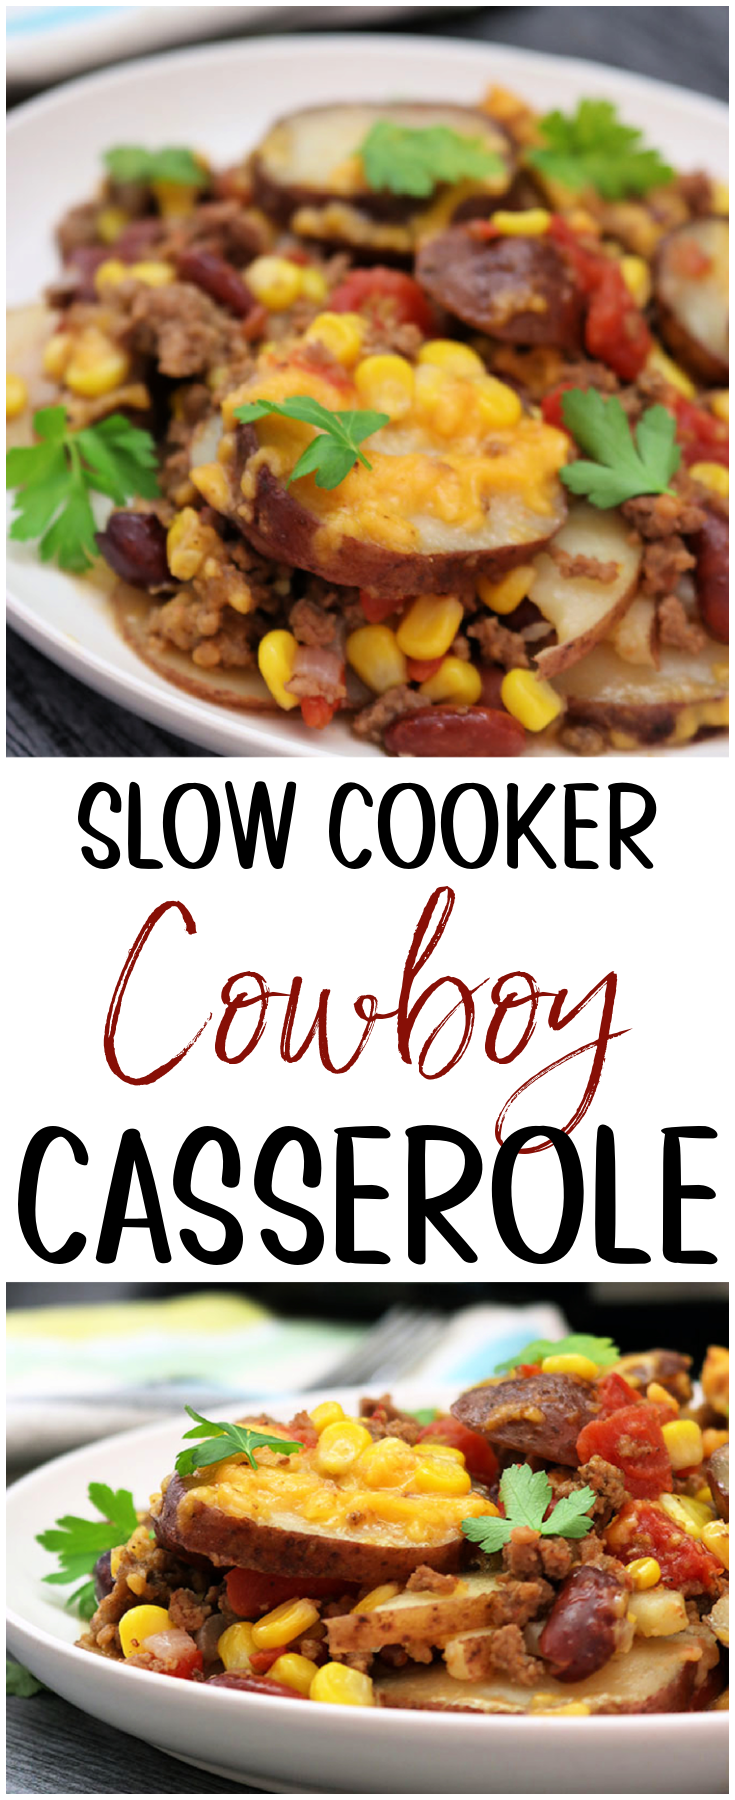 Slow Cooker Cowboy Casserole